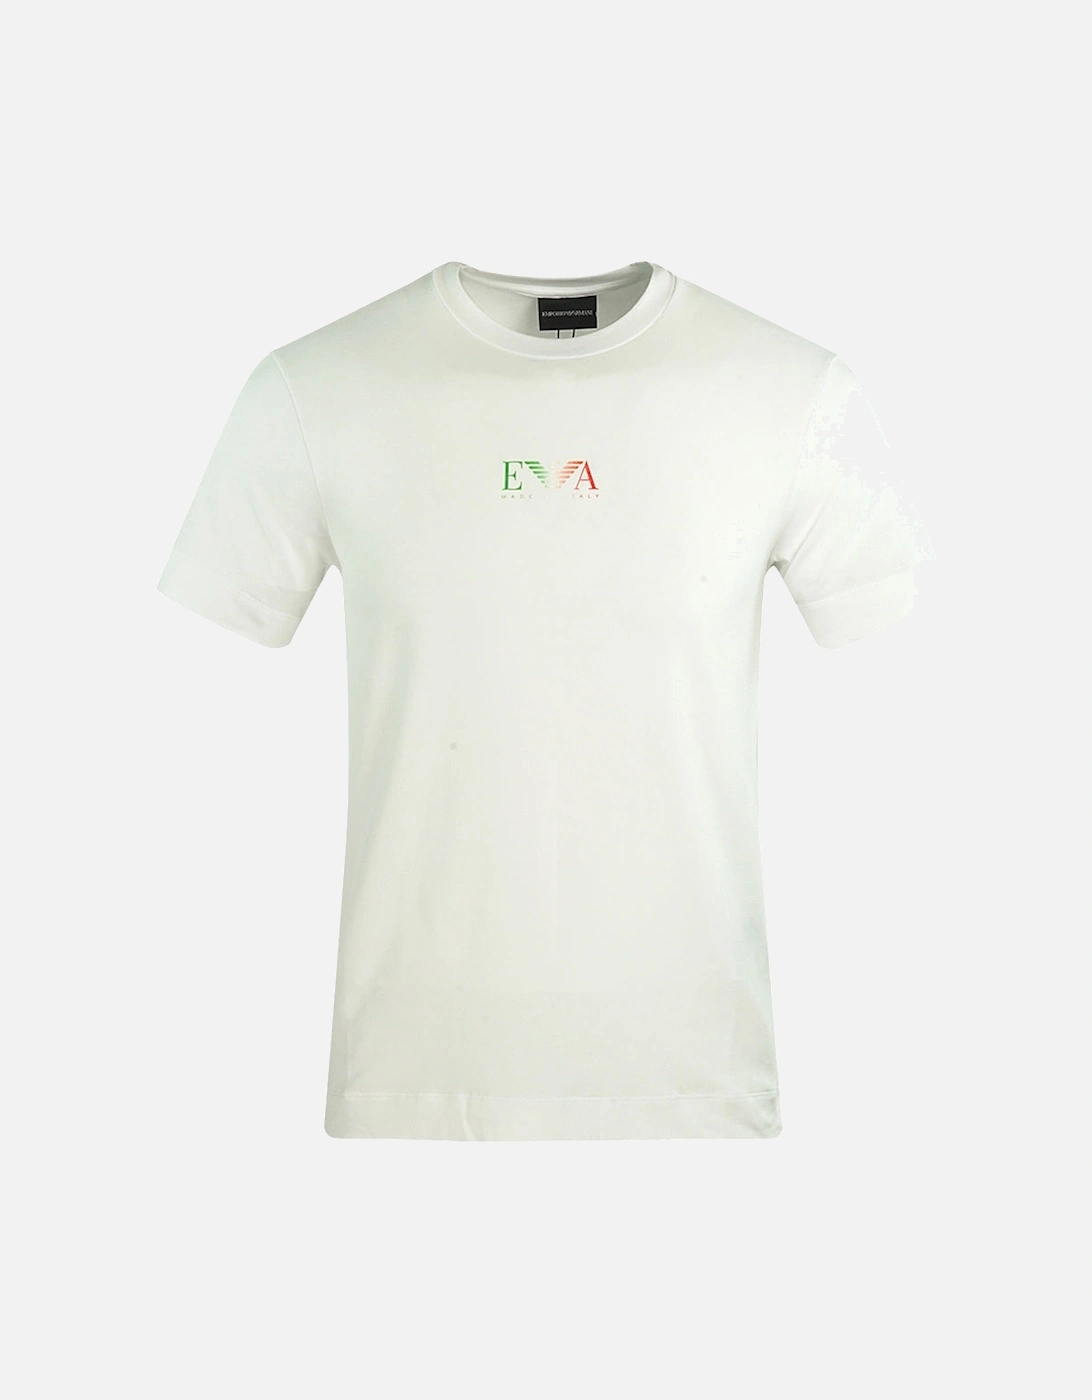 EA Italian Flag Logo White T-Shirt, 3 of 2